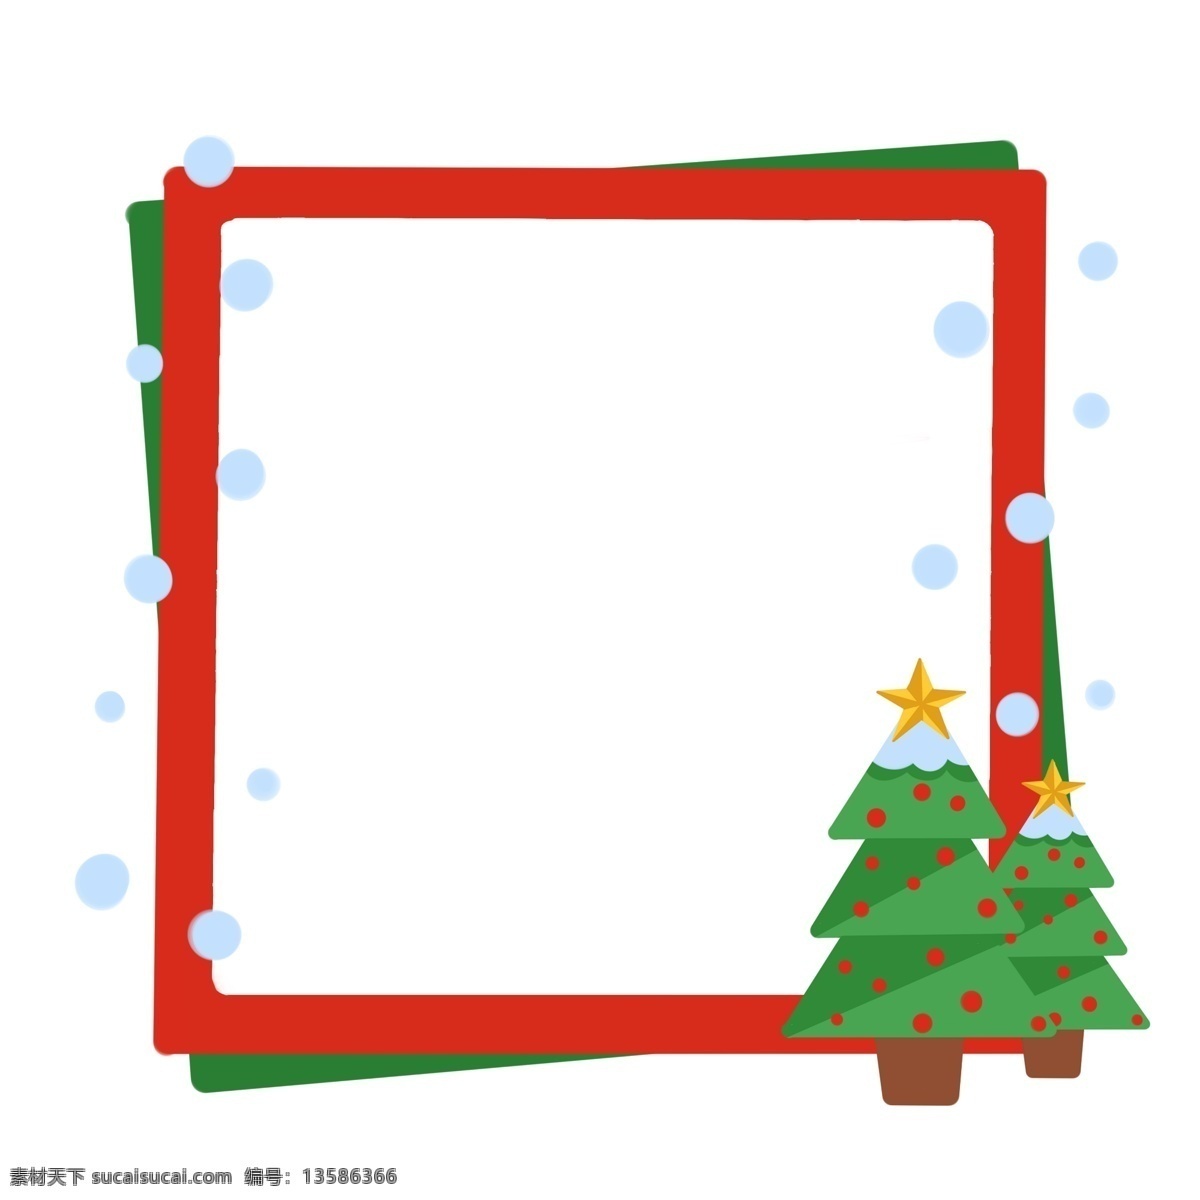 圣诞 红 绿色 双边 边框 插画 圣诞边框插画 红色边框 绿色边框 白色波点 圣诞树装饰 圣诞节对话框 圣诞节文本框 黄色星星